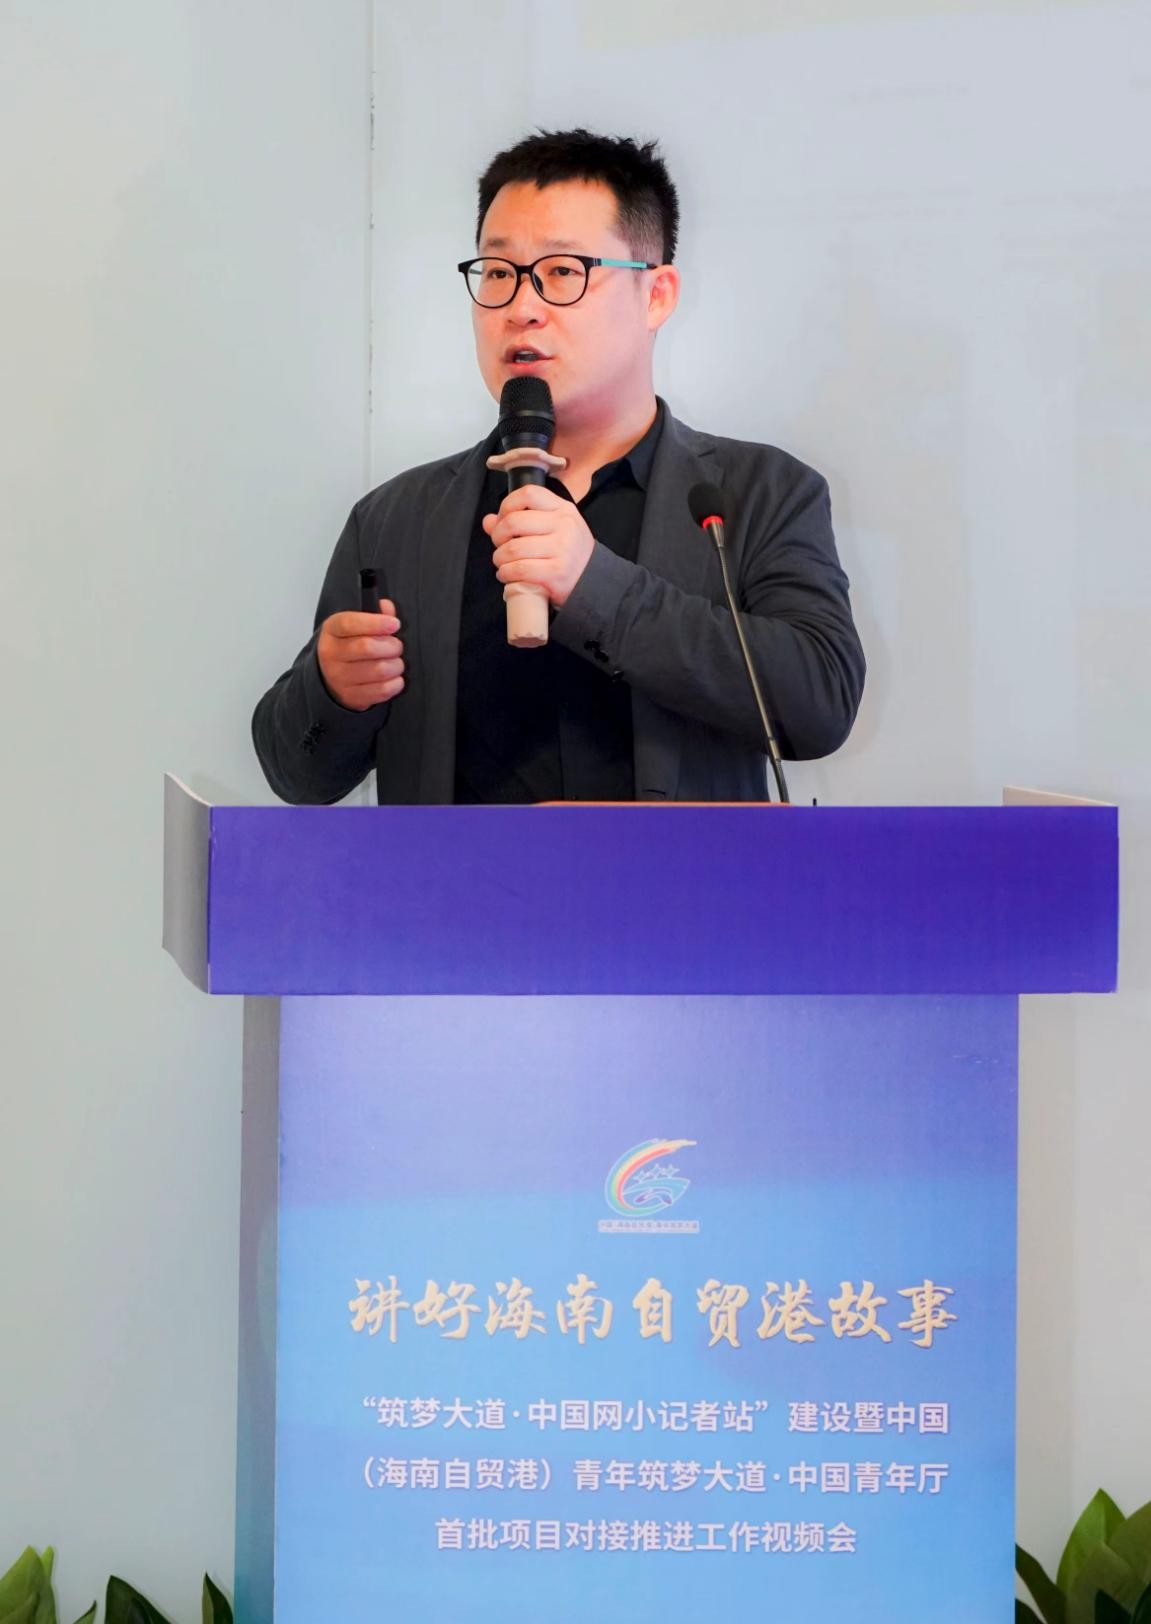 中国网小记者站建设项目成功落户海南筑梦大道